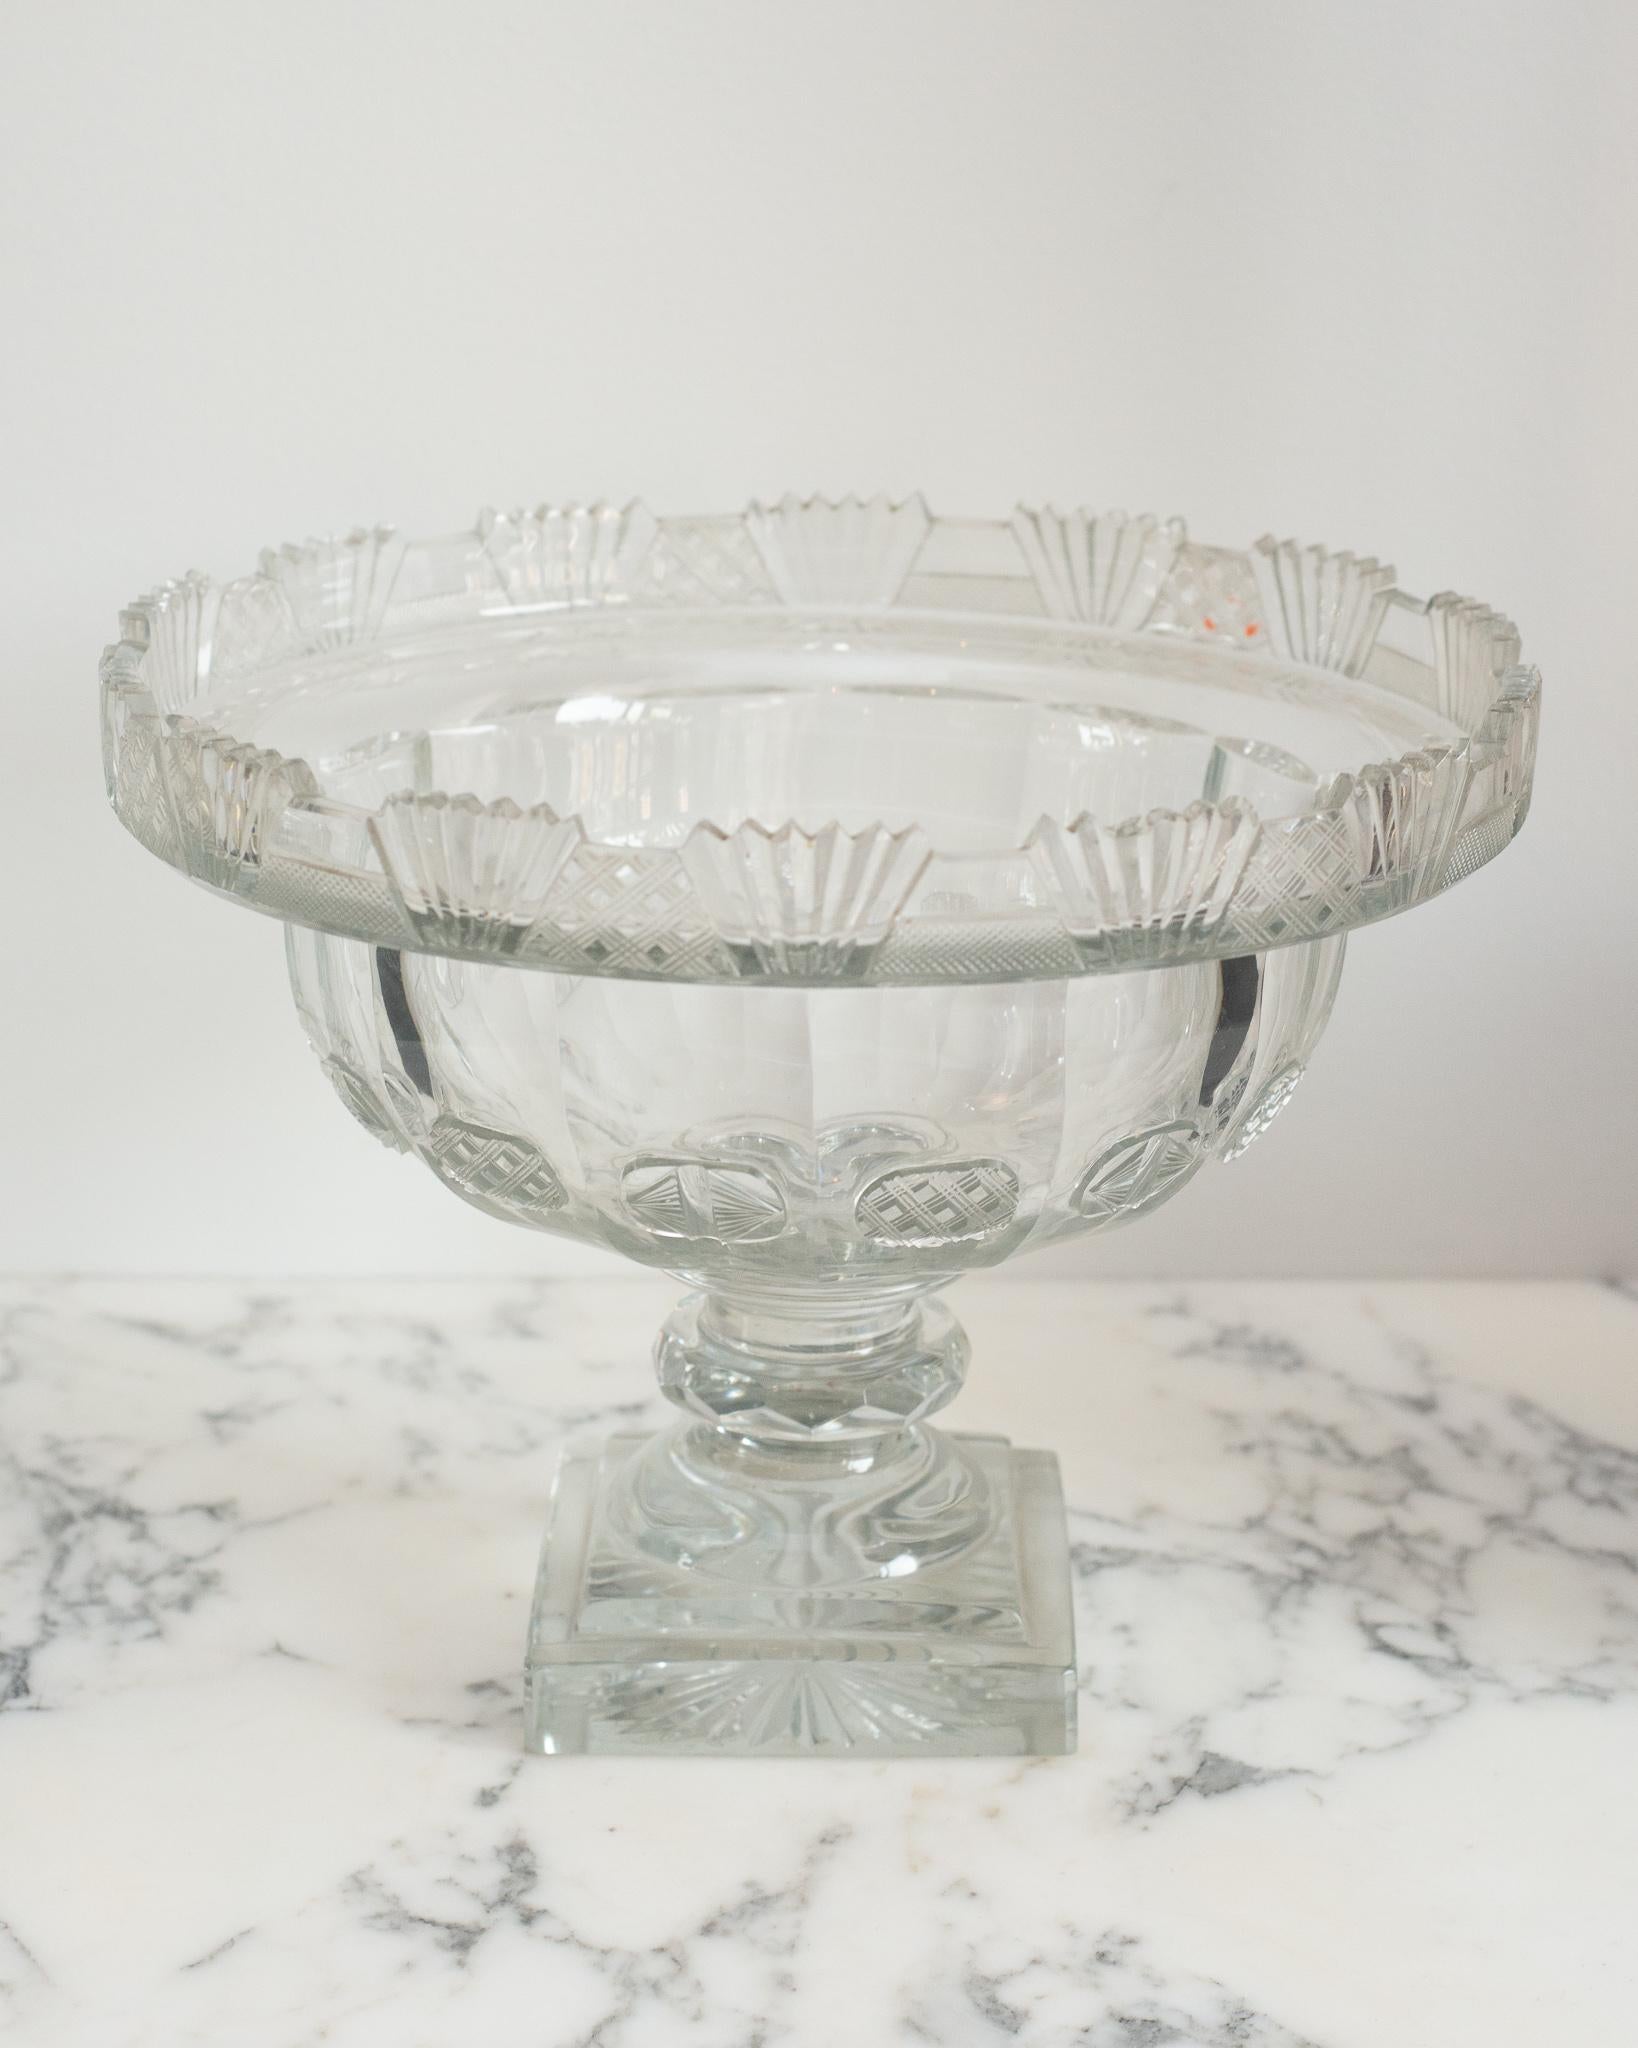 Ce grand bol décoratif irlandais en cristal taillé est un accessoire classique facile à placer dans n'importe quelle maison. Parfait pour le service ou la décoration, il peut être rempli de fruits ou de fleurs flottantes.